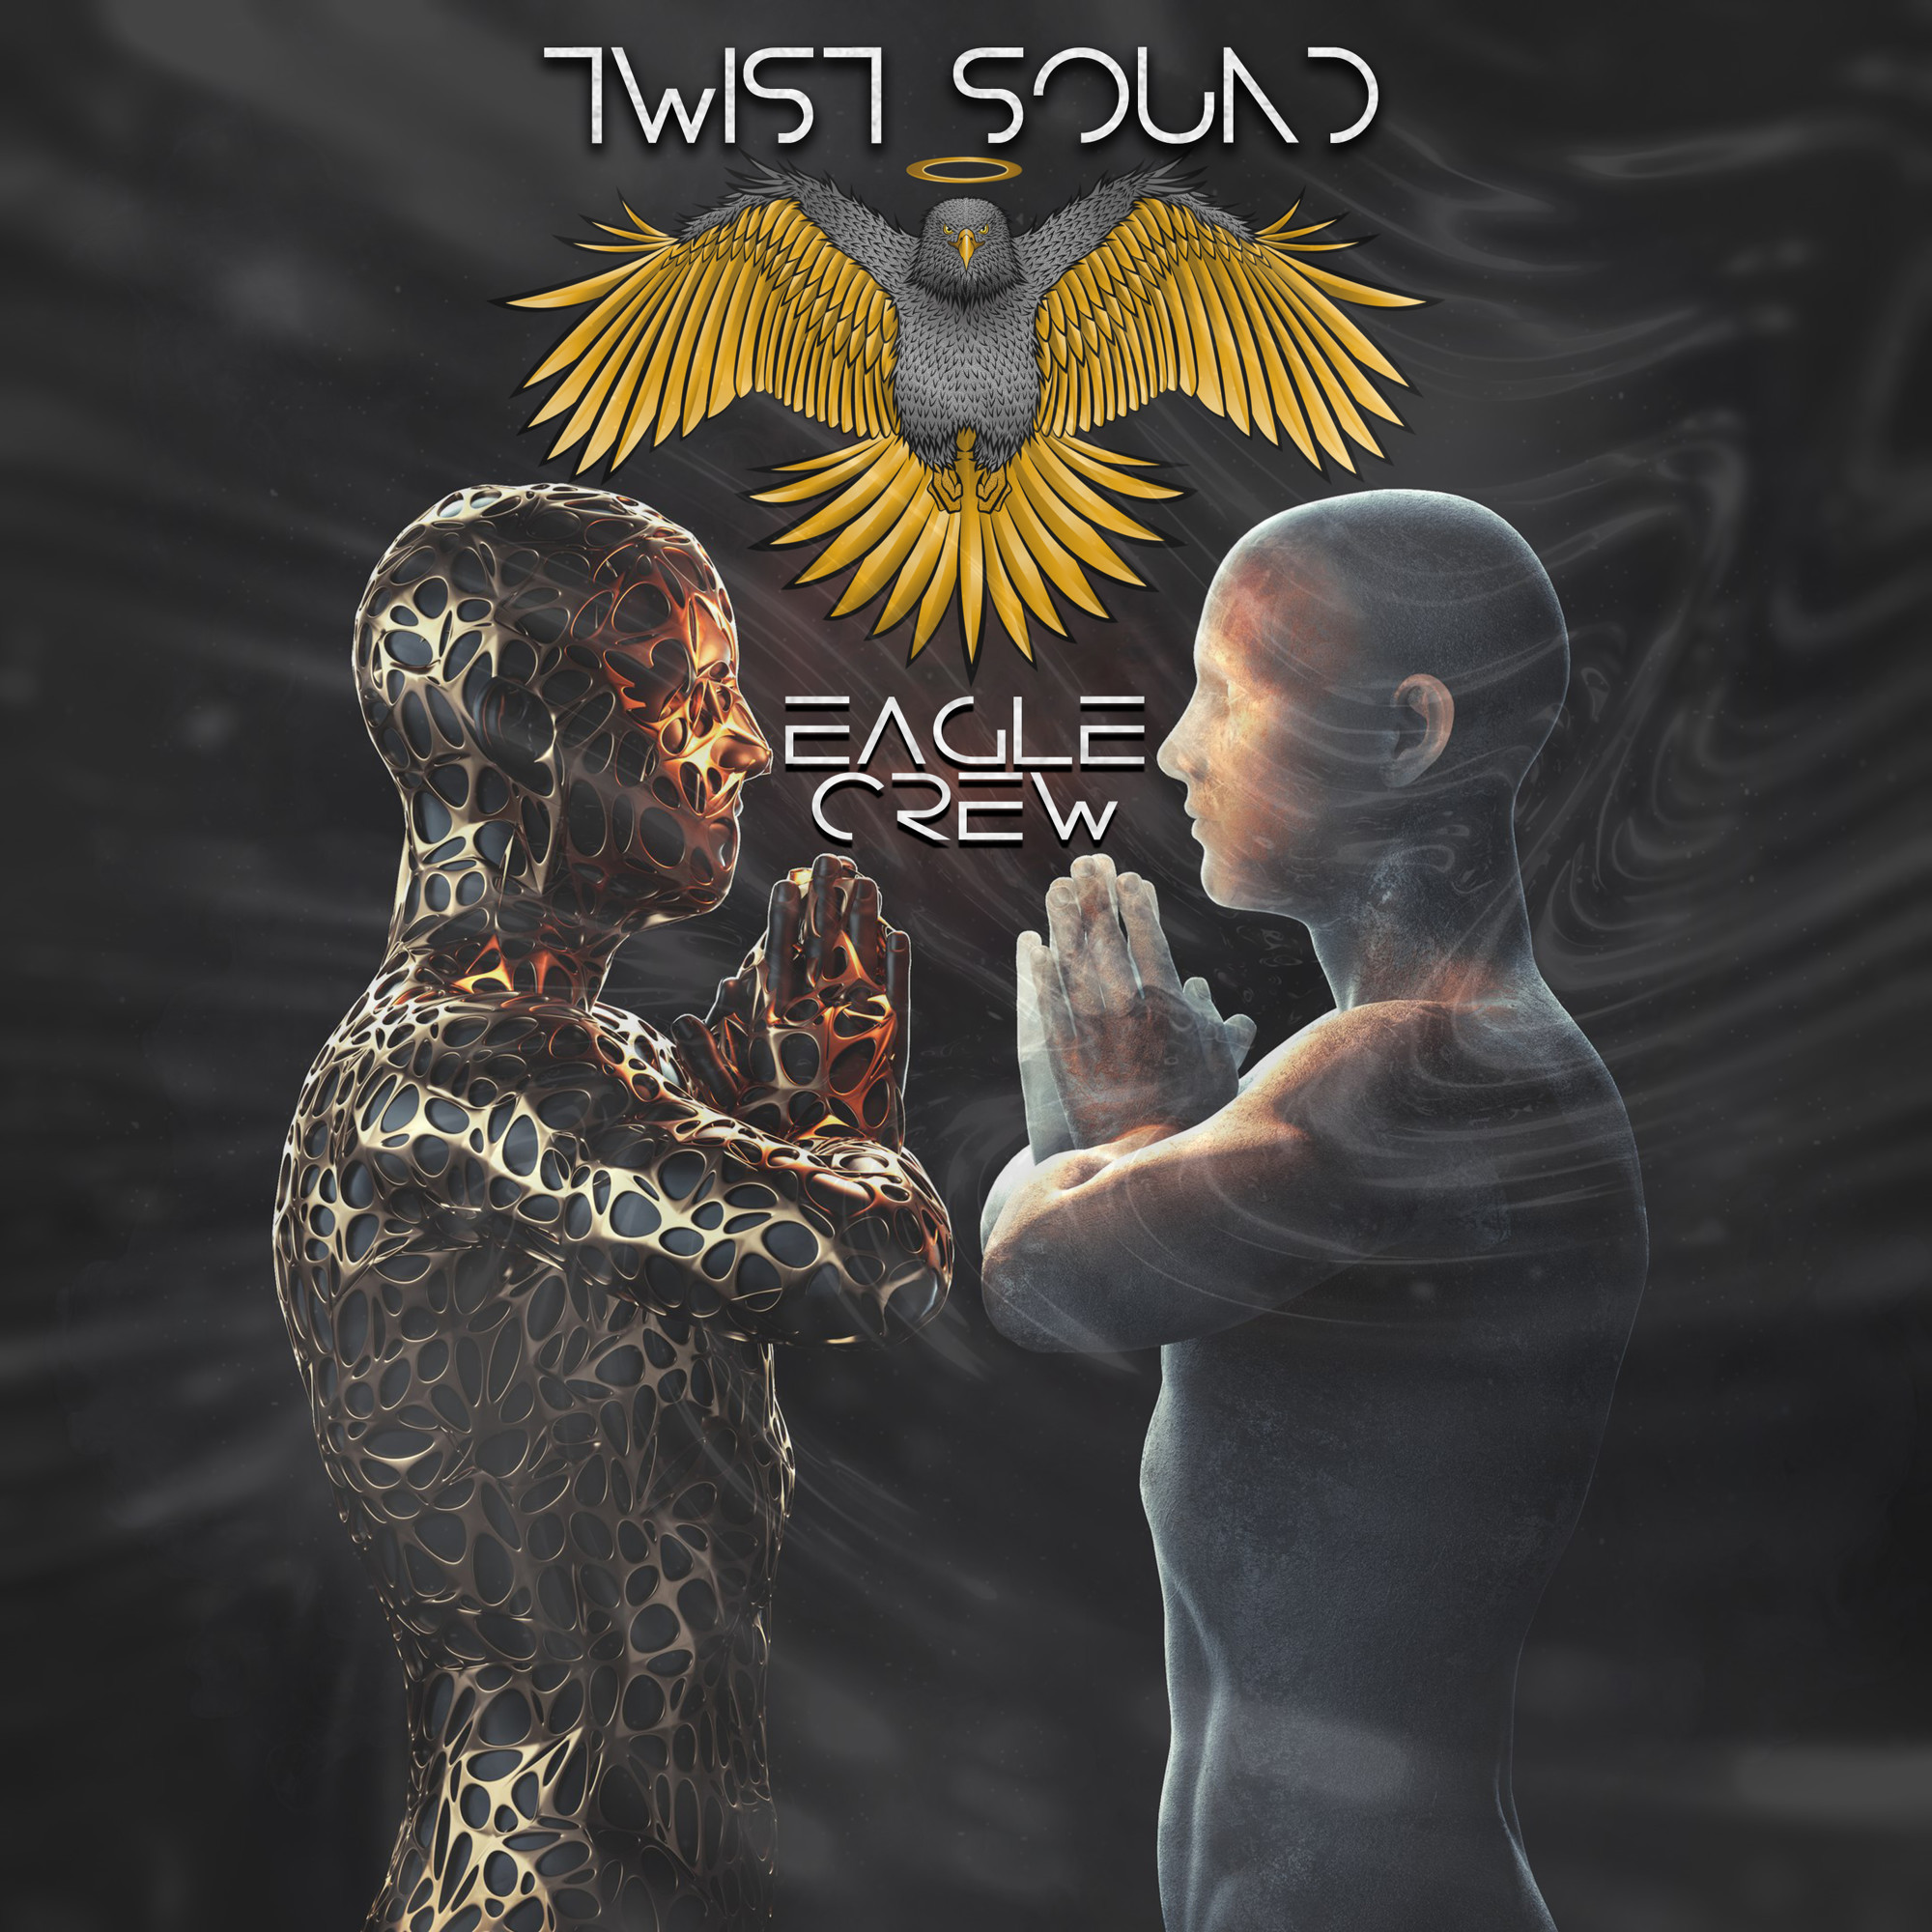 twist sound